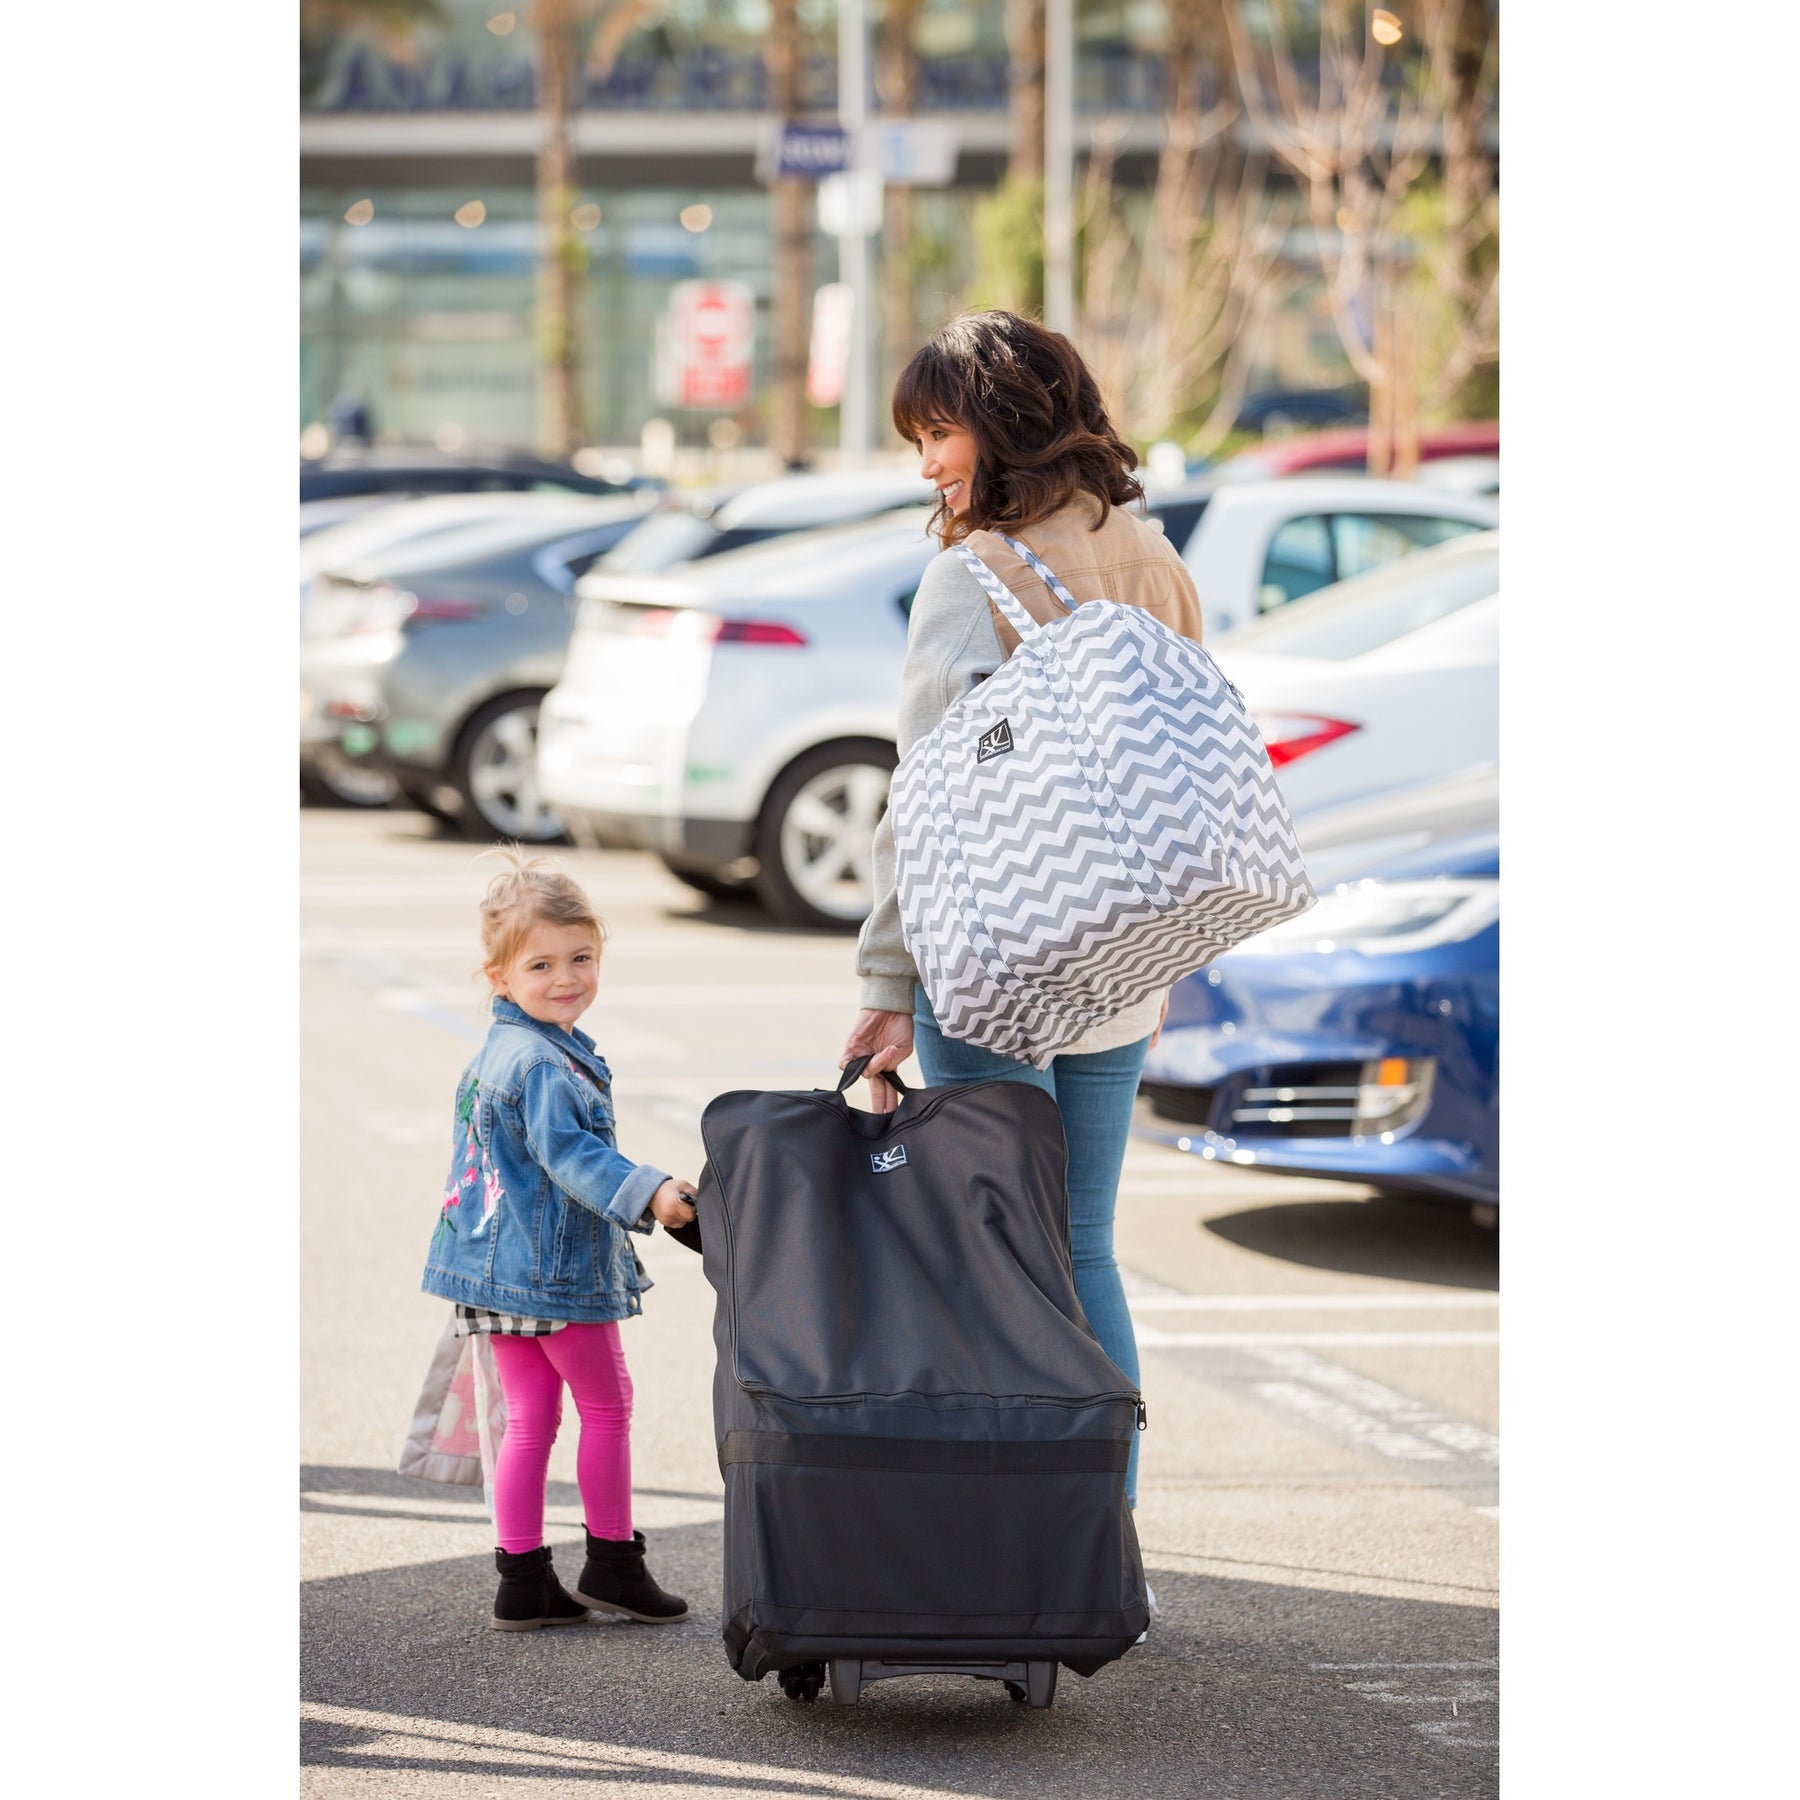 Bramble Waterproof Car Seat Bags for Air Travel - Infant Car Seat Travel  Bag for Airplane | Gate Check Bag for Car Seats & Booster | Carseat Travel